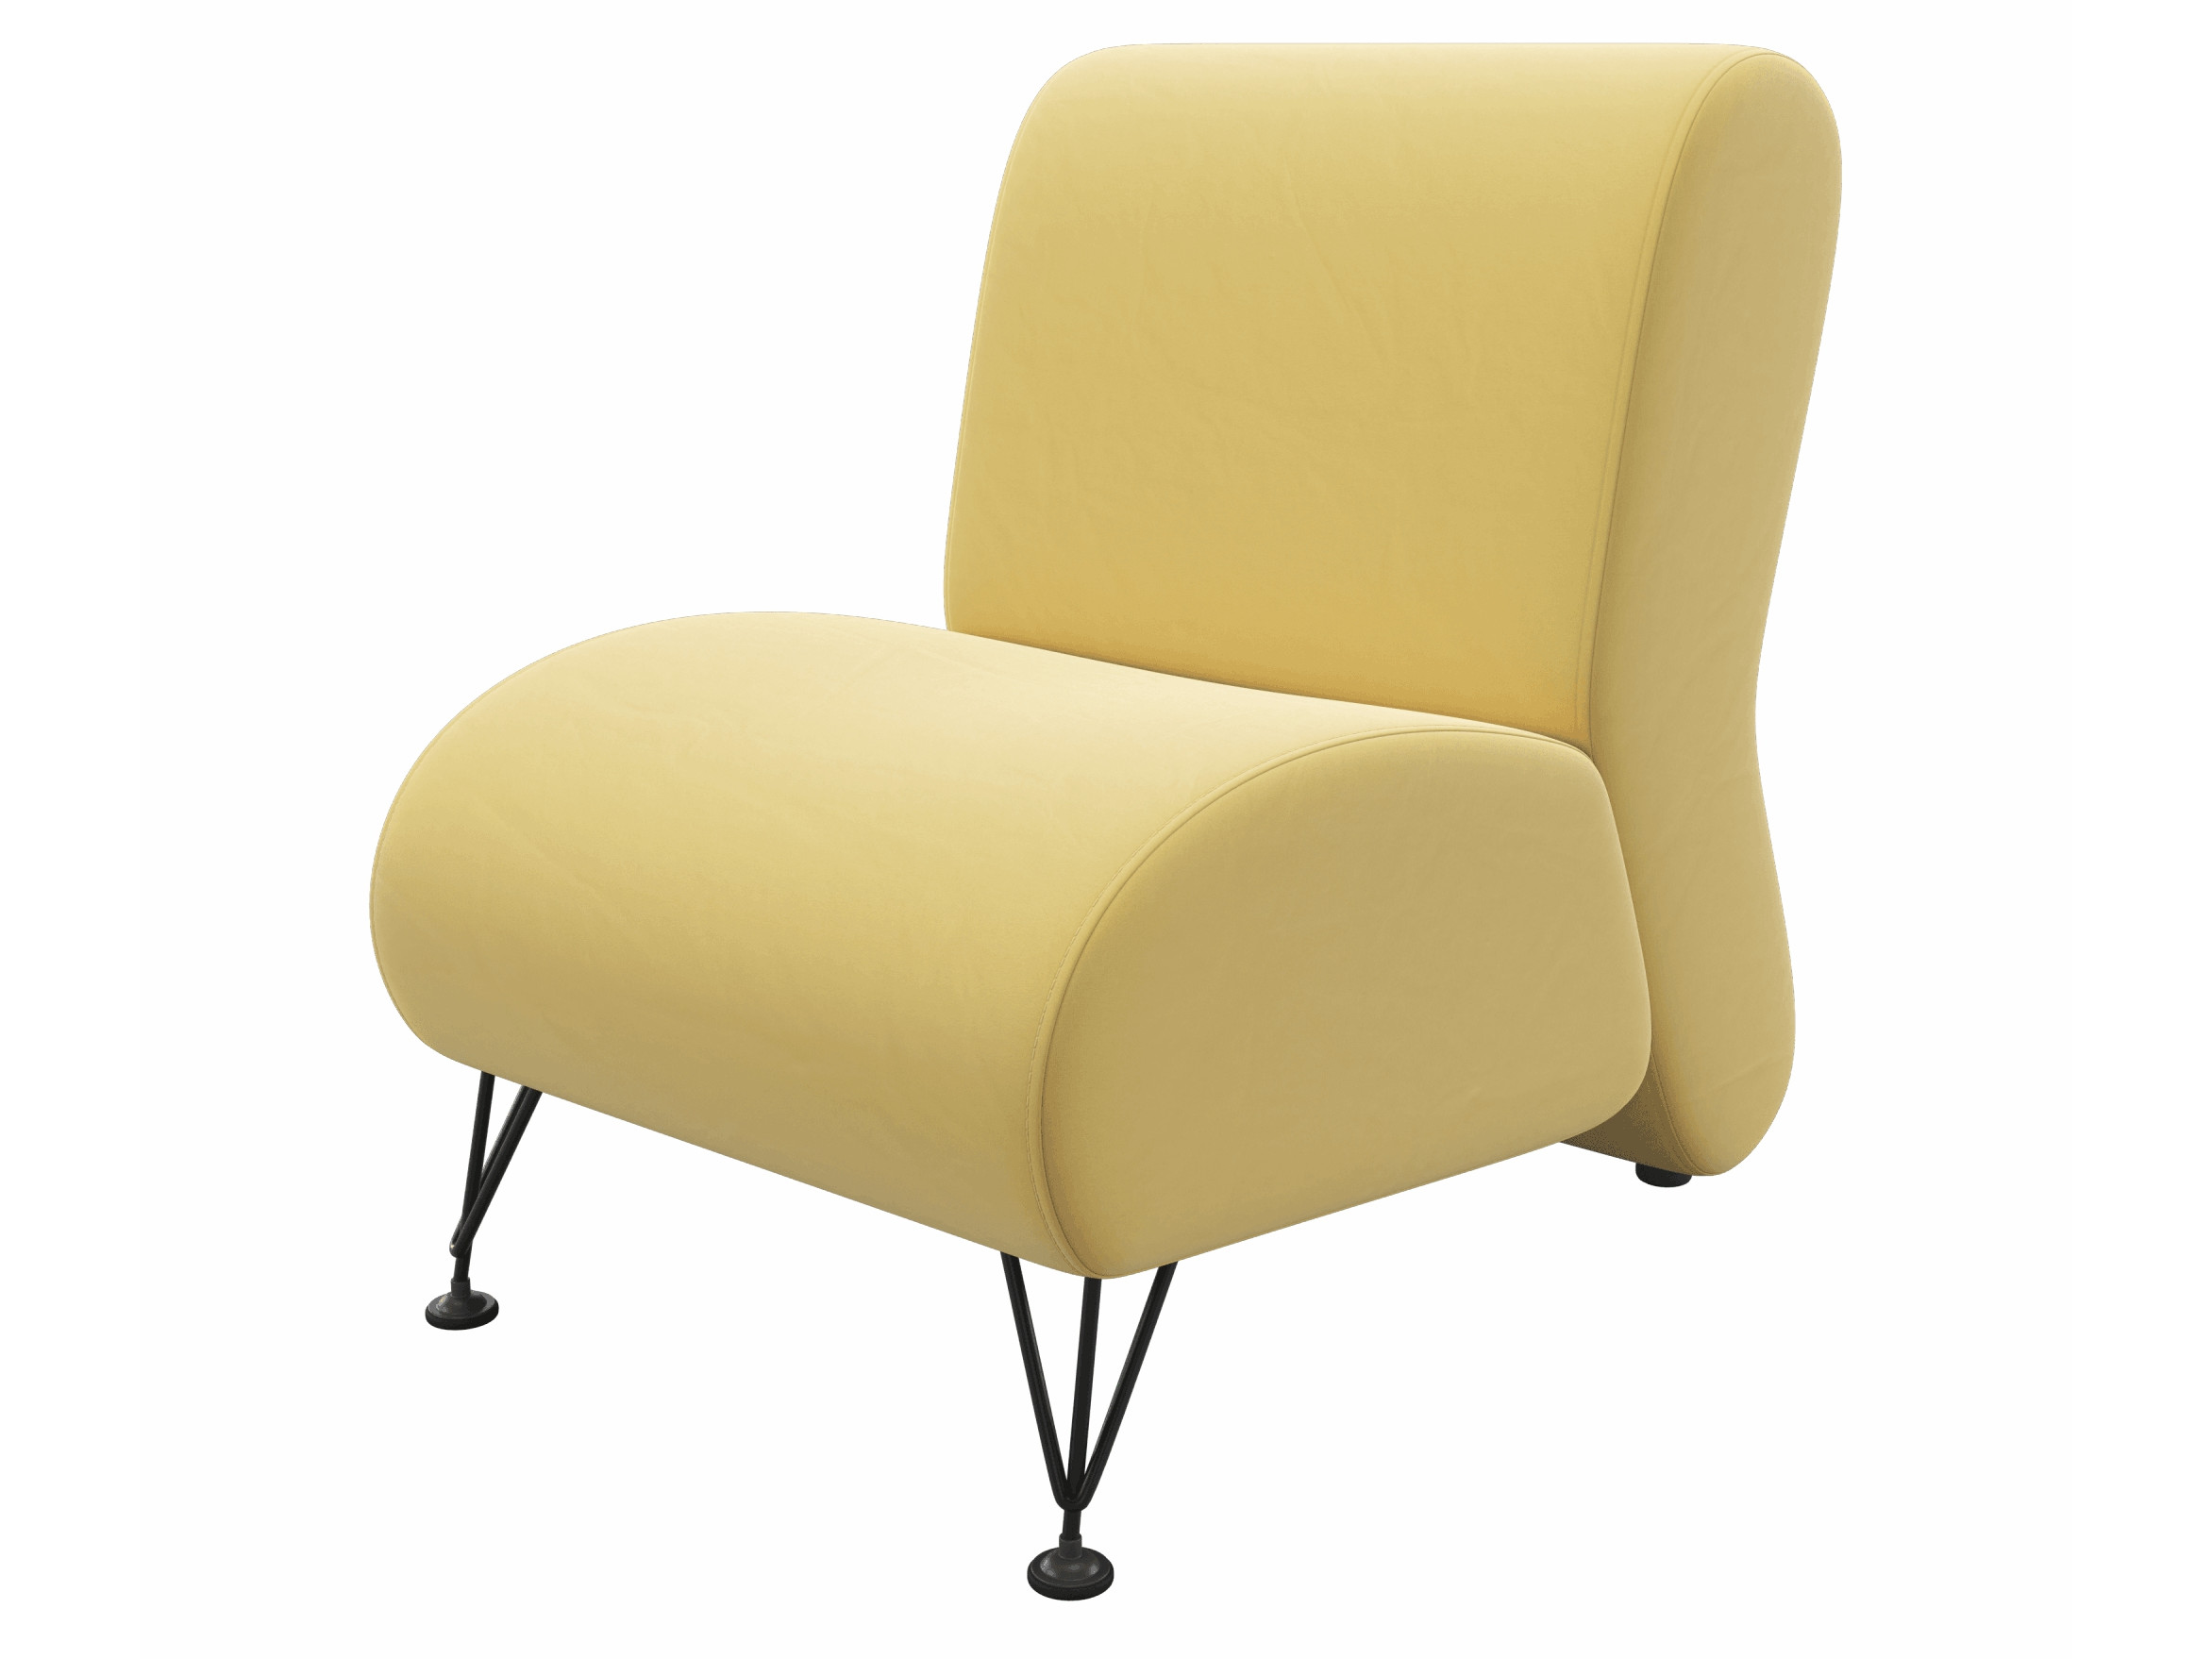 Мягкое дизайнерское кресло Pati желтый MebelVia желтый, Велюр